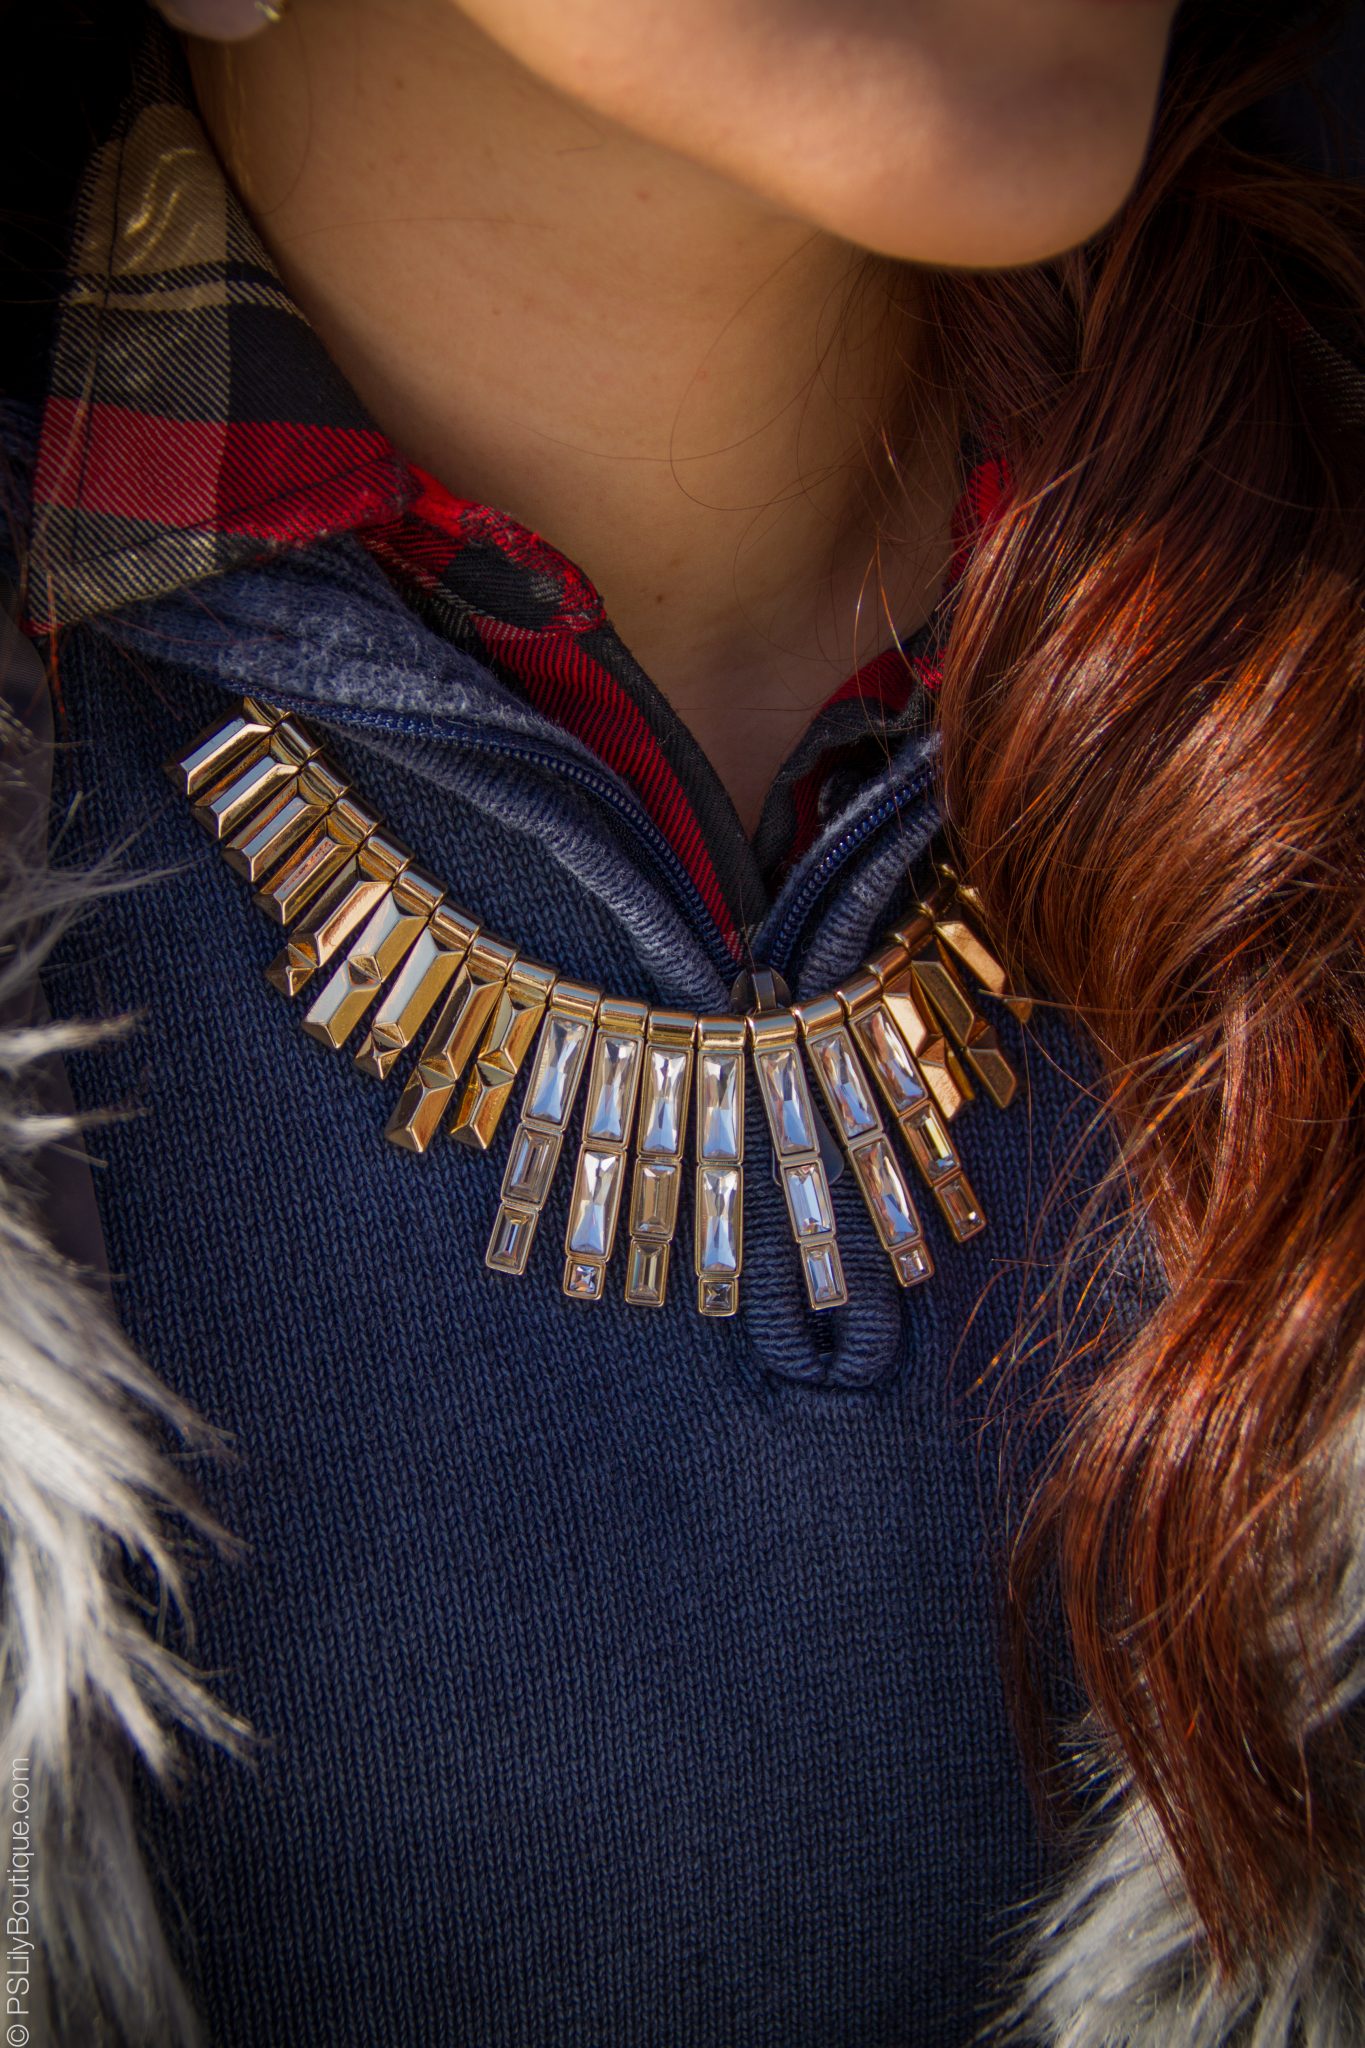 pslilyboutique-fashion-blogger-rocksbox-slate-skyline-necklace, Instagram @pslilyboutique